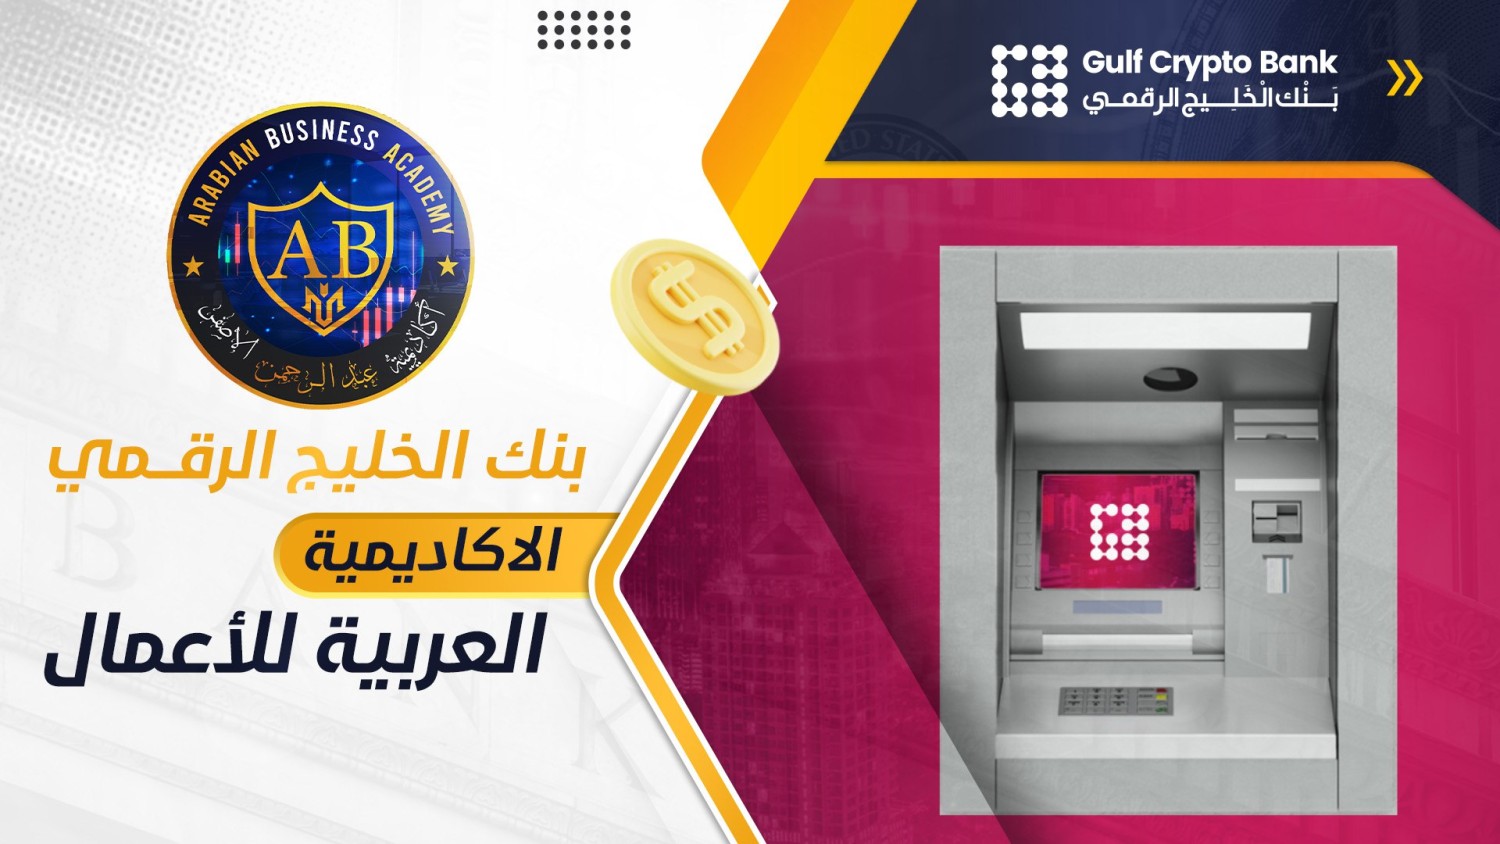 بنك الخليج الرقمي – الاكاديمية العربية للأعمال